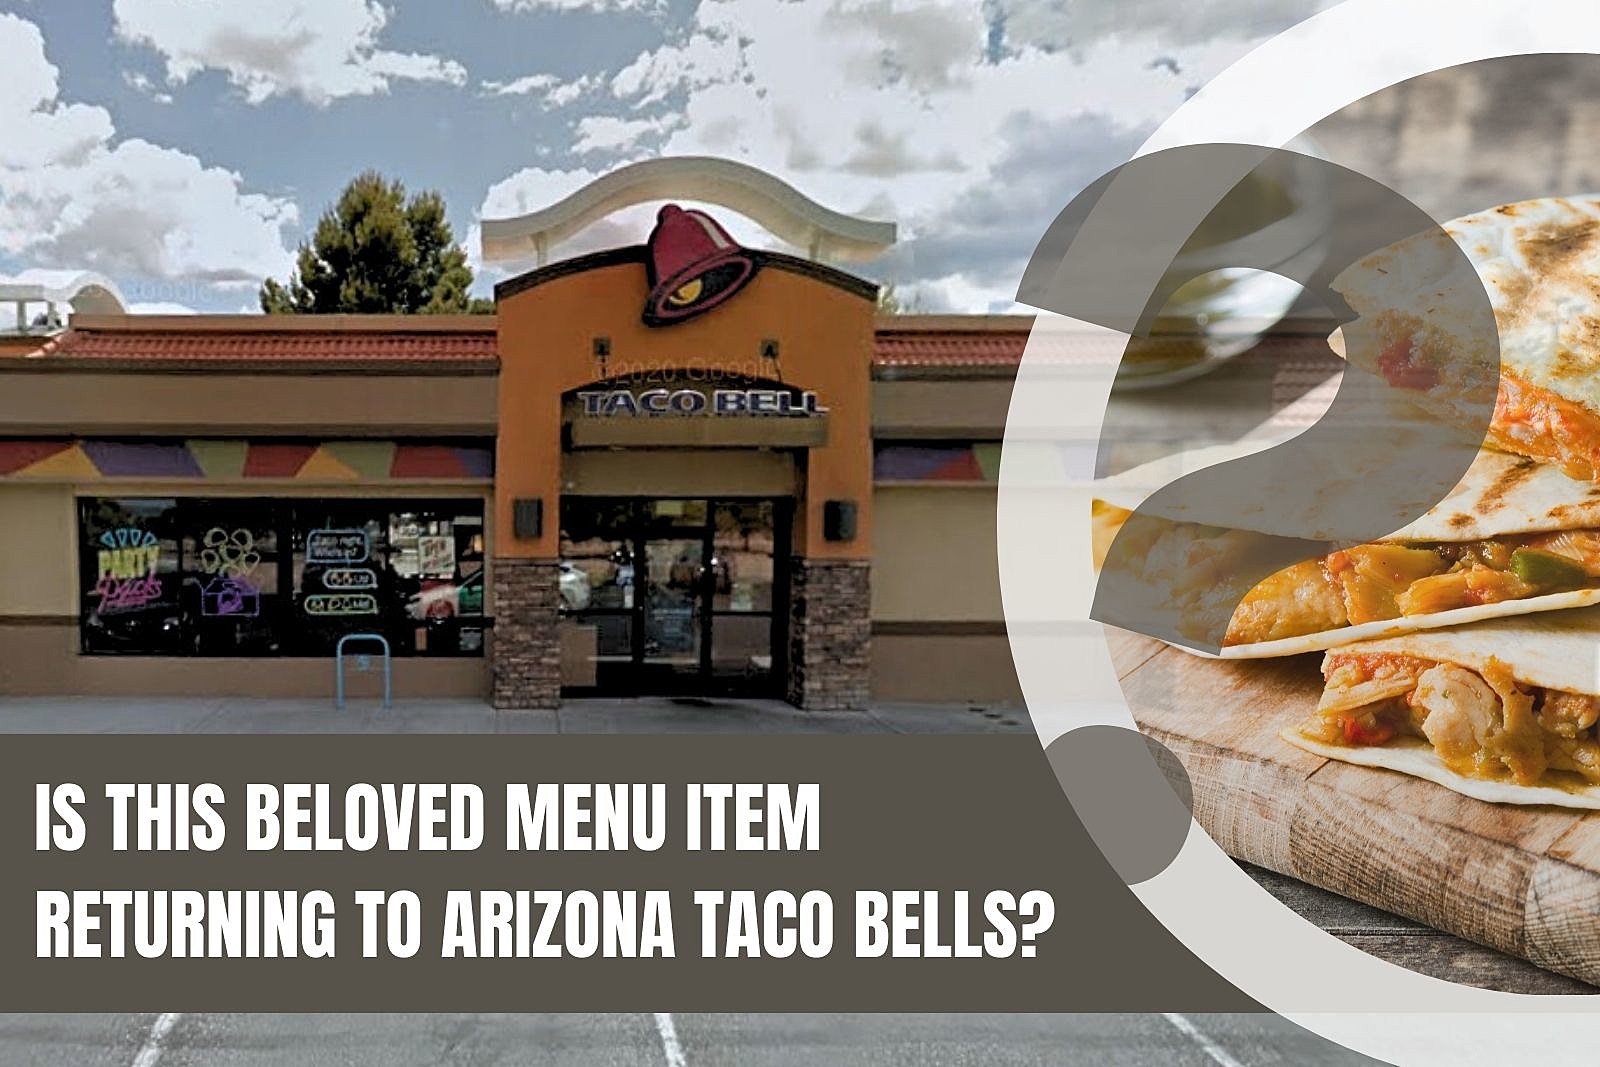 Popular Taco Bell Item Returning to Arizona